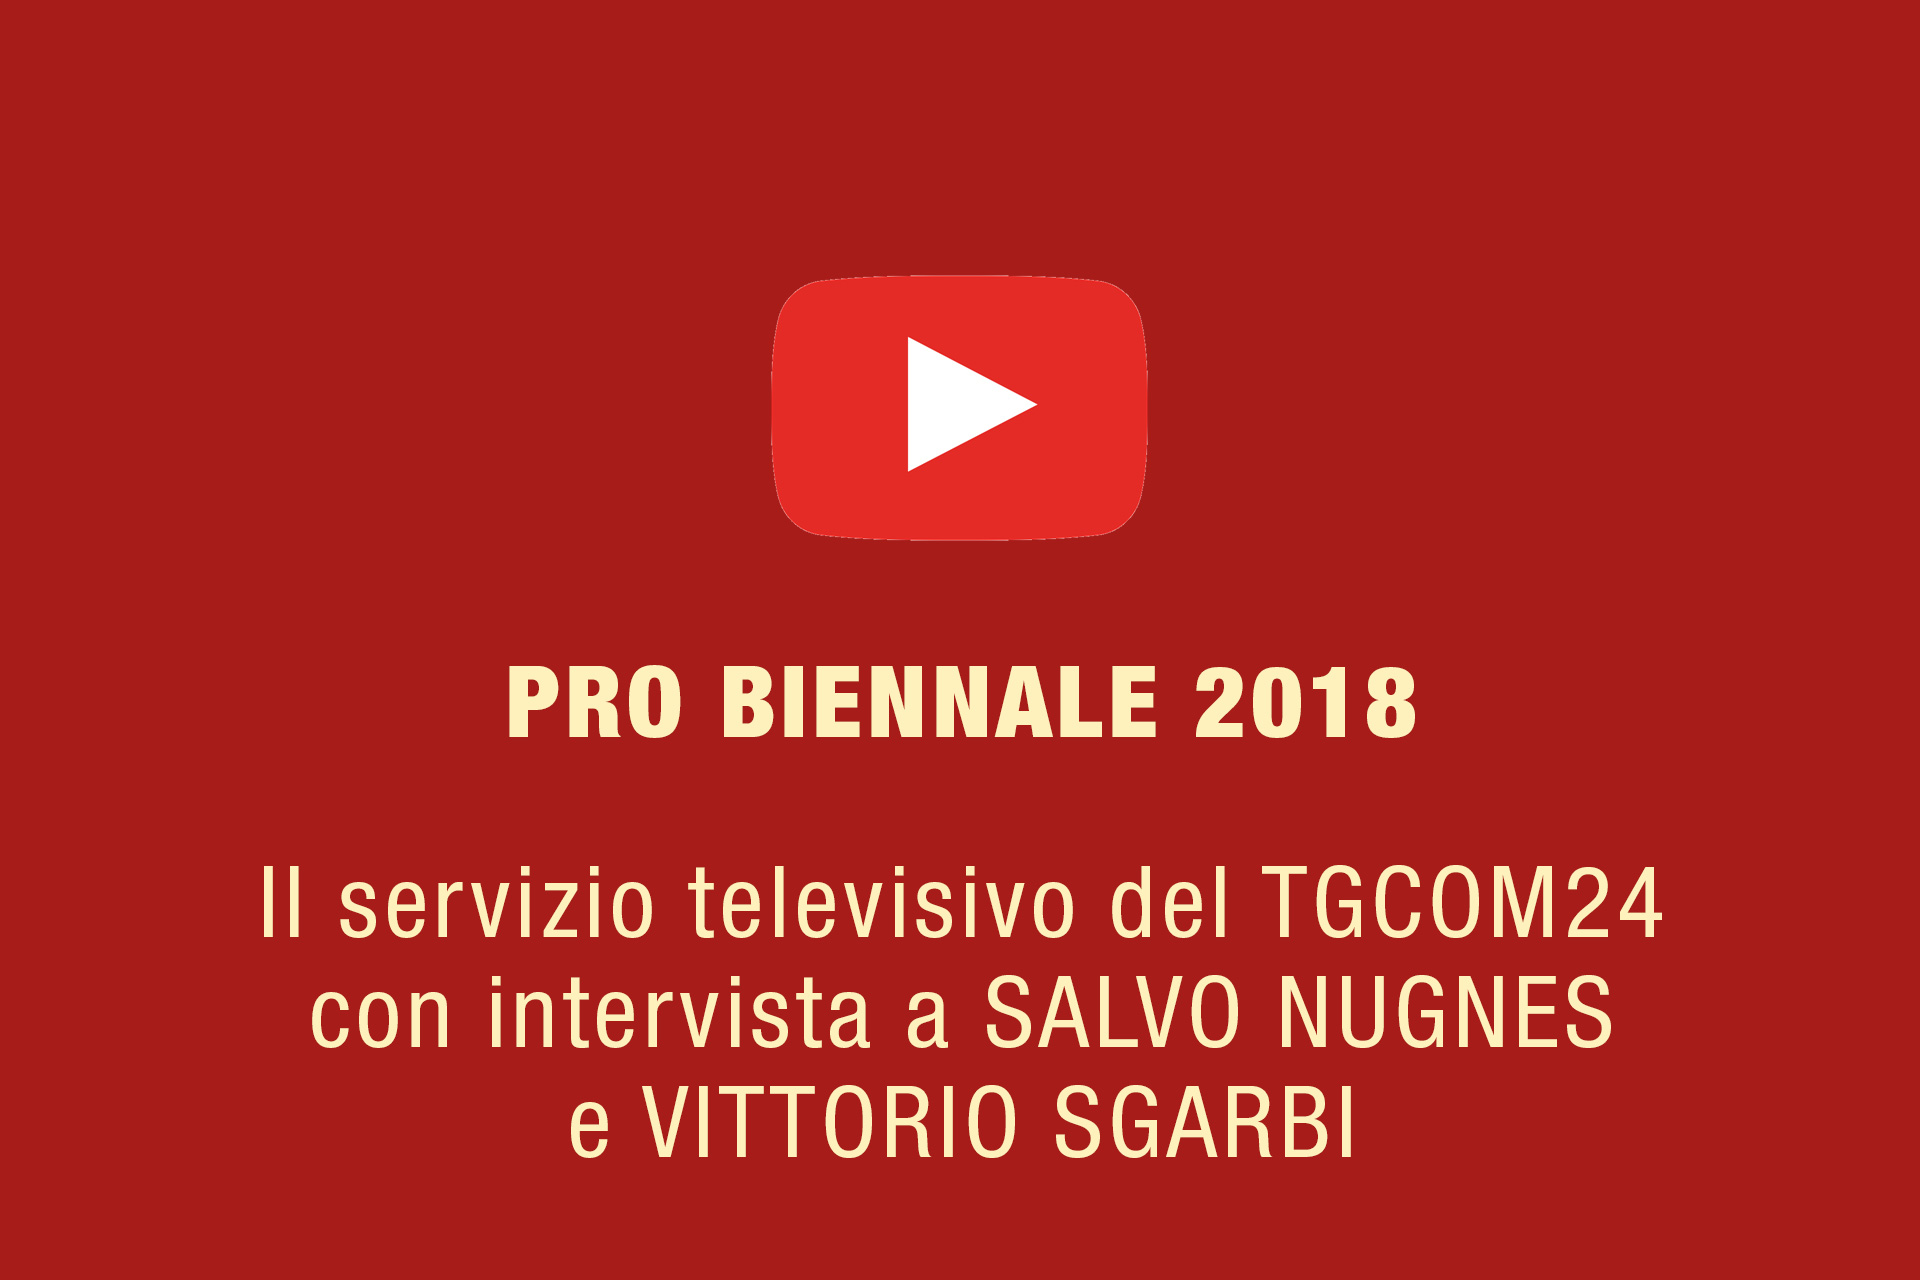 Pro Biennale 2018